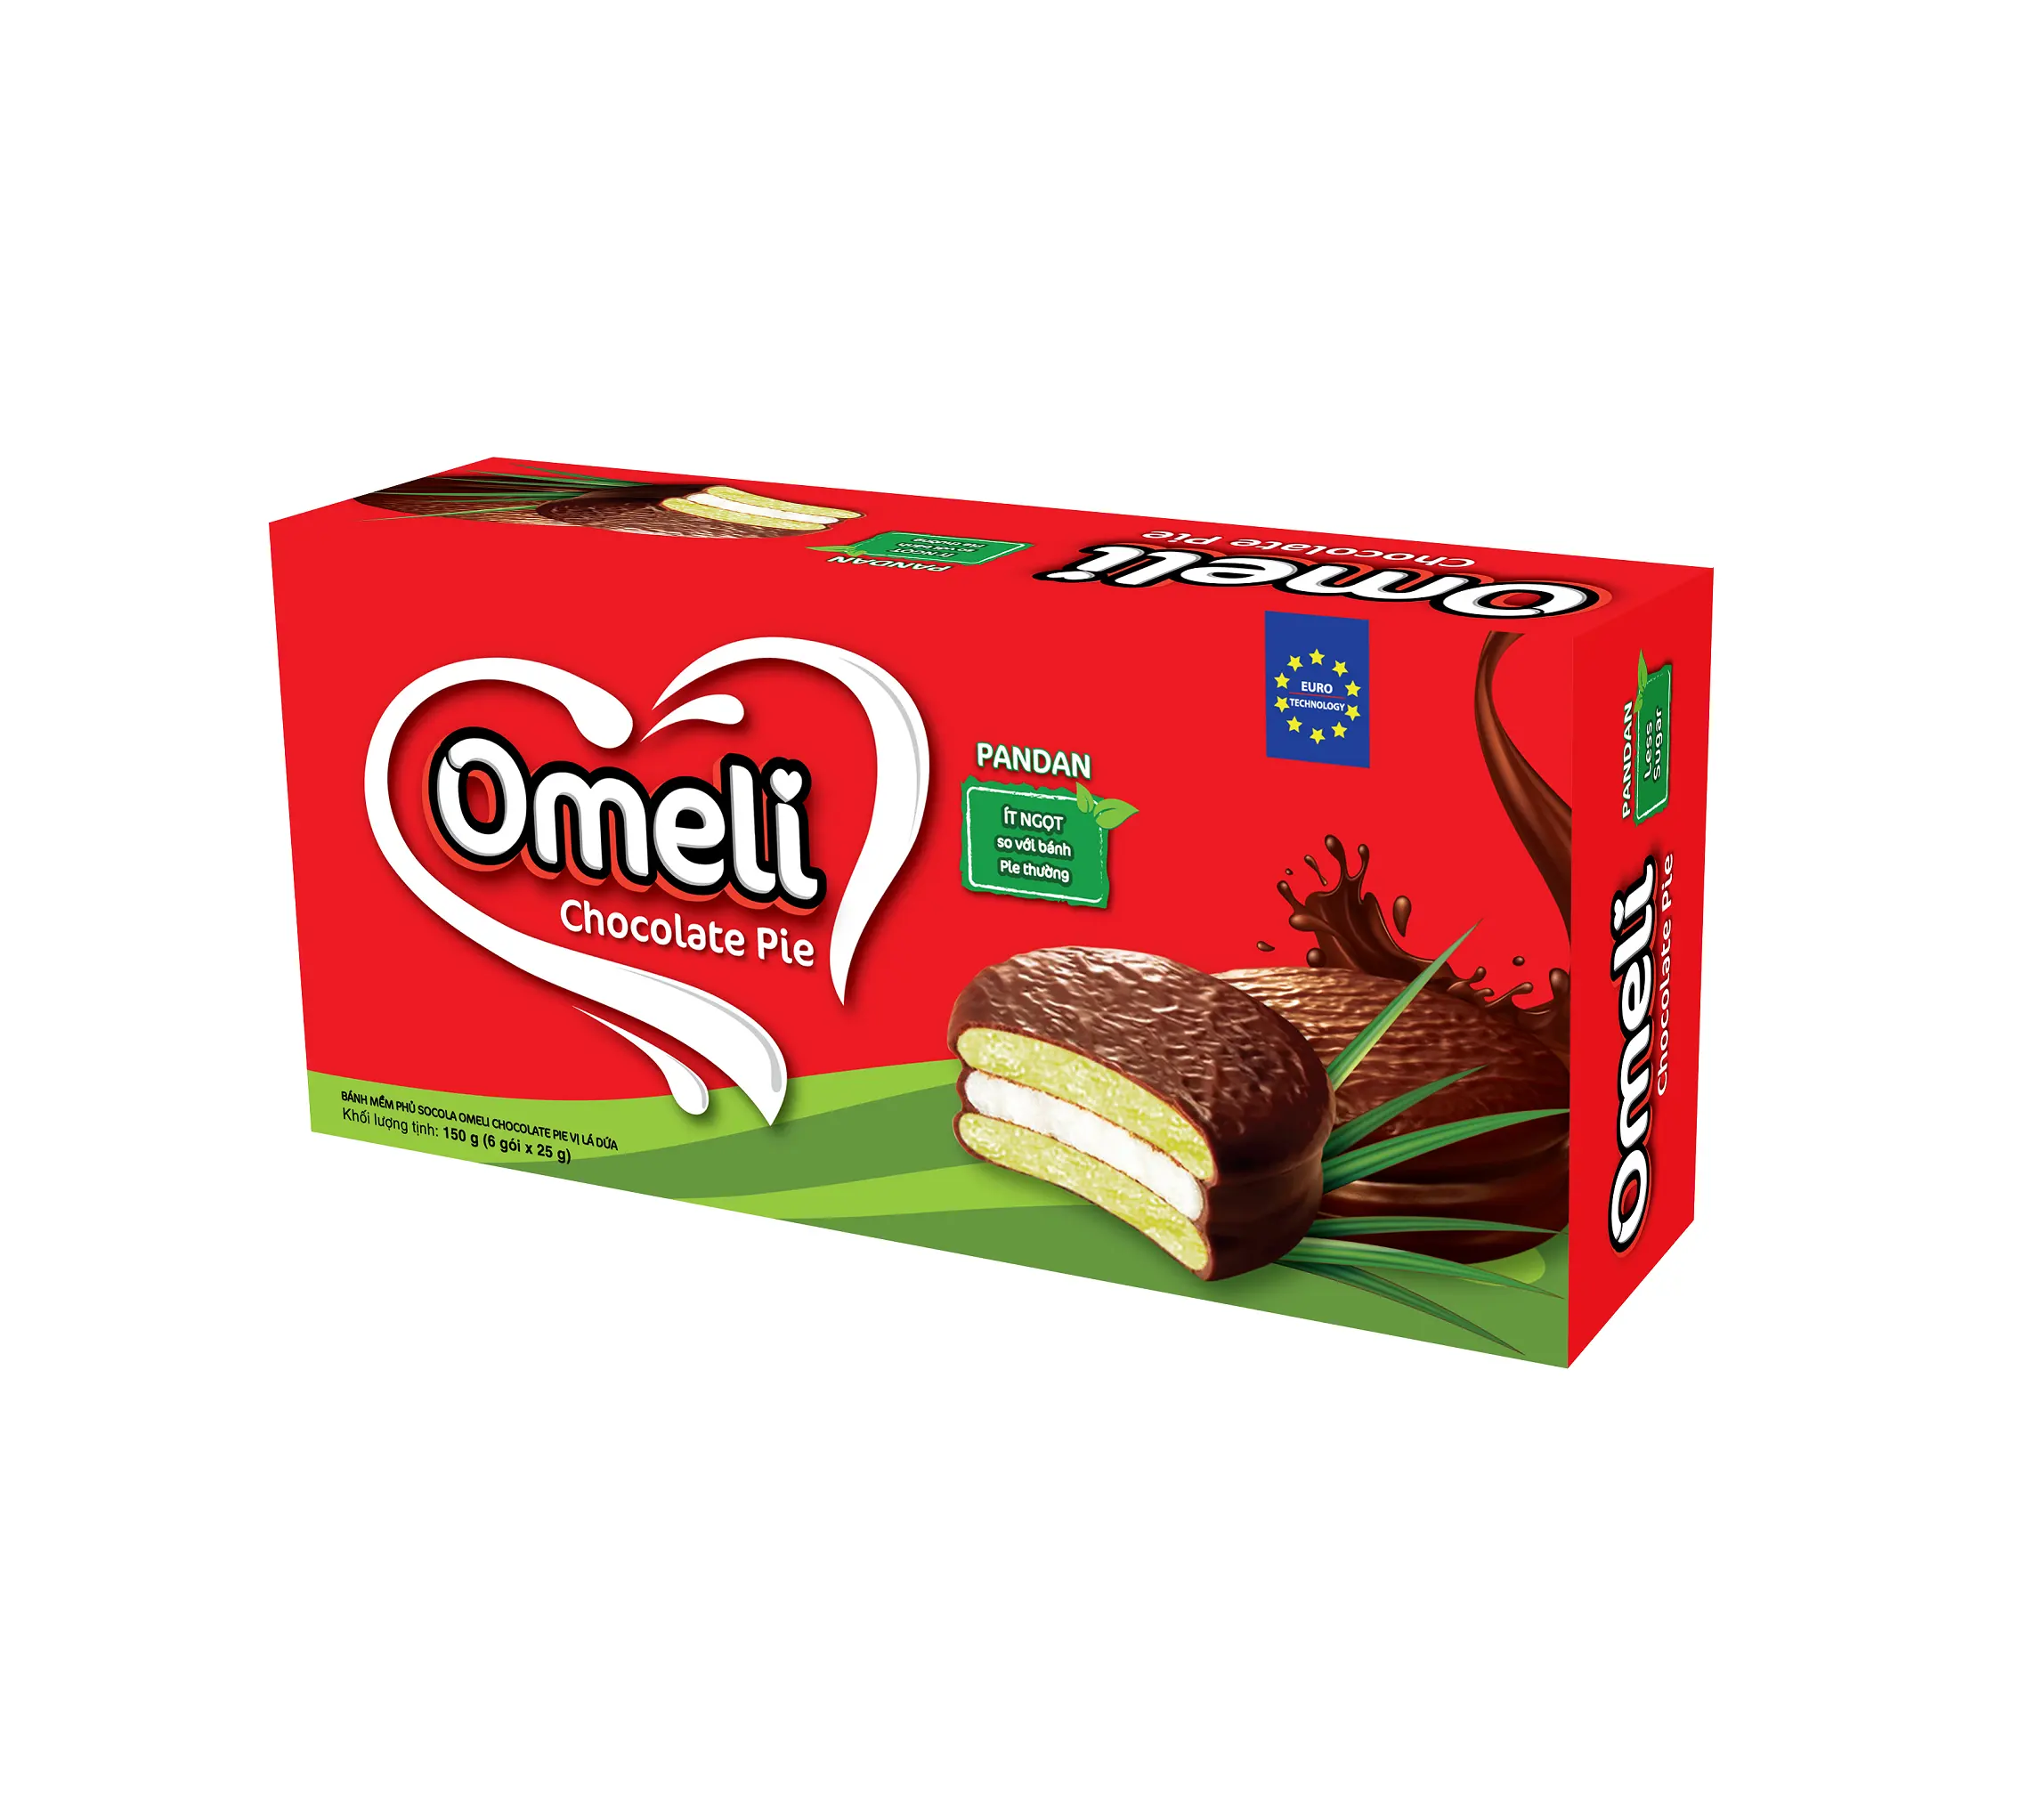 Premium Kwaliteit Nieuw Product Omeli Smakelijke Chocoladetaart/Chocie 150gr Met Pandan-Smaakstof-Verpakt In Papieren Doos Chocoladetaart